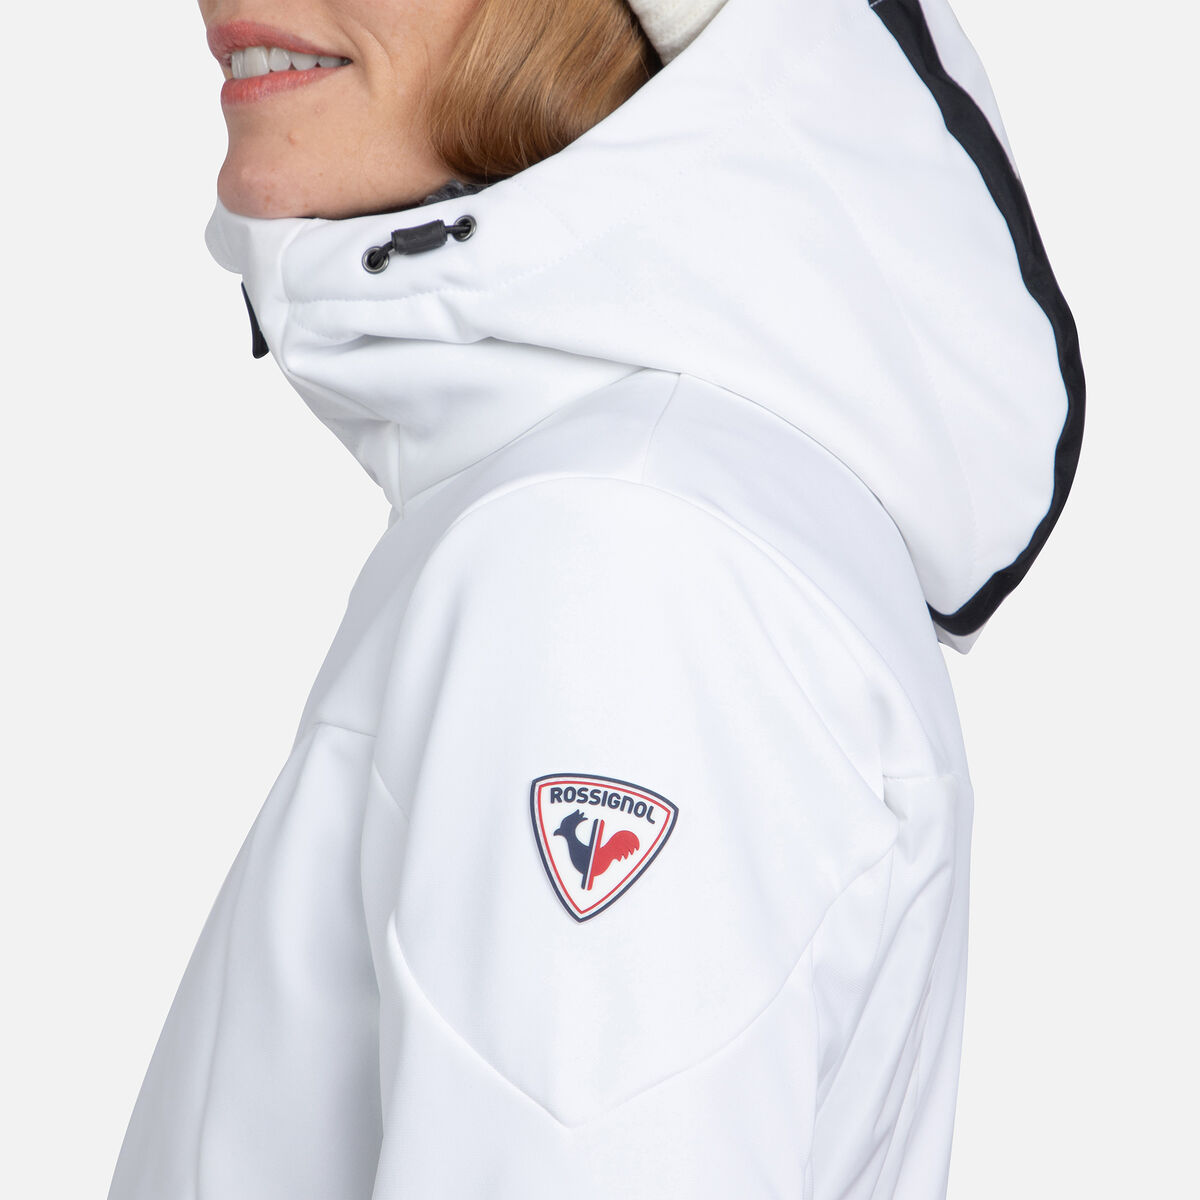 Rossignol Women's Versatile Ski Jacket white